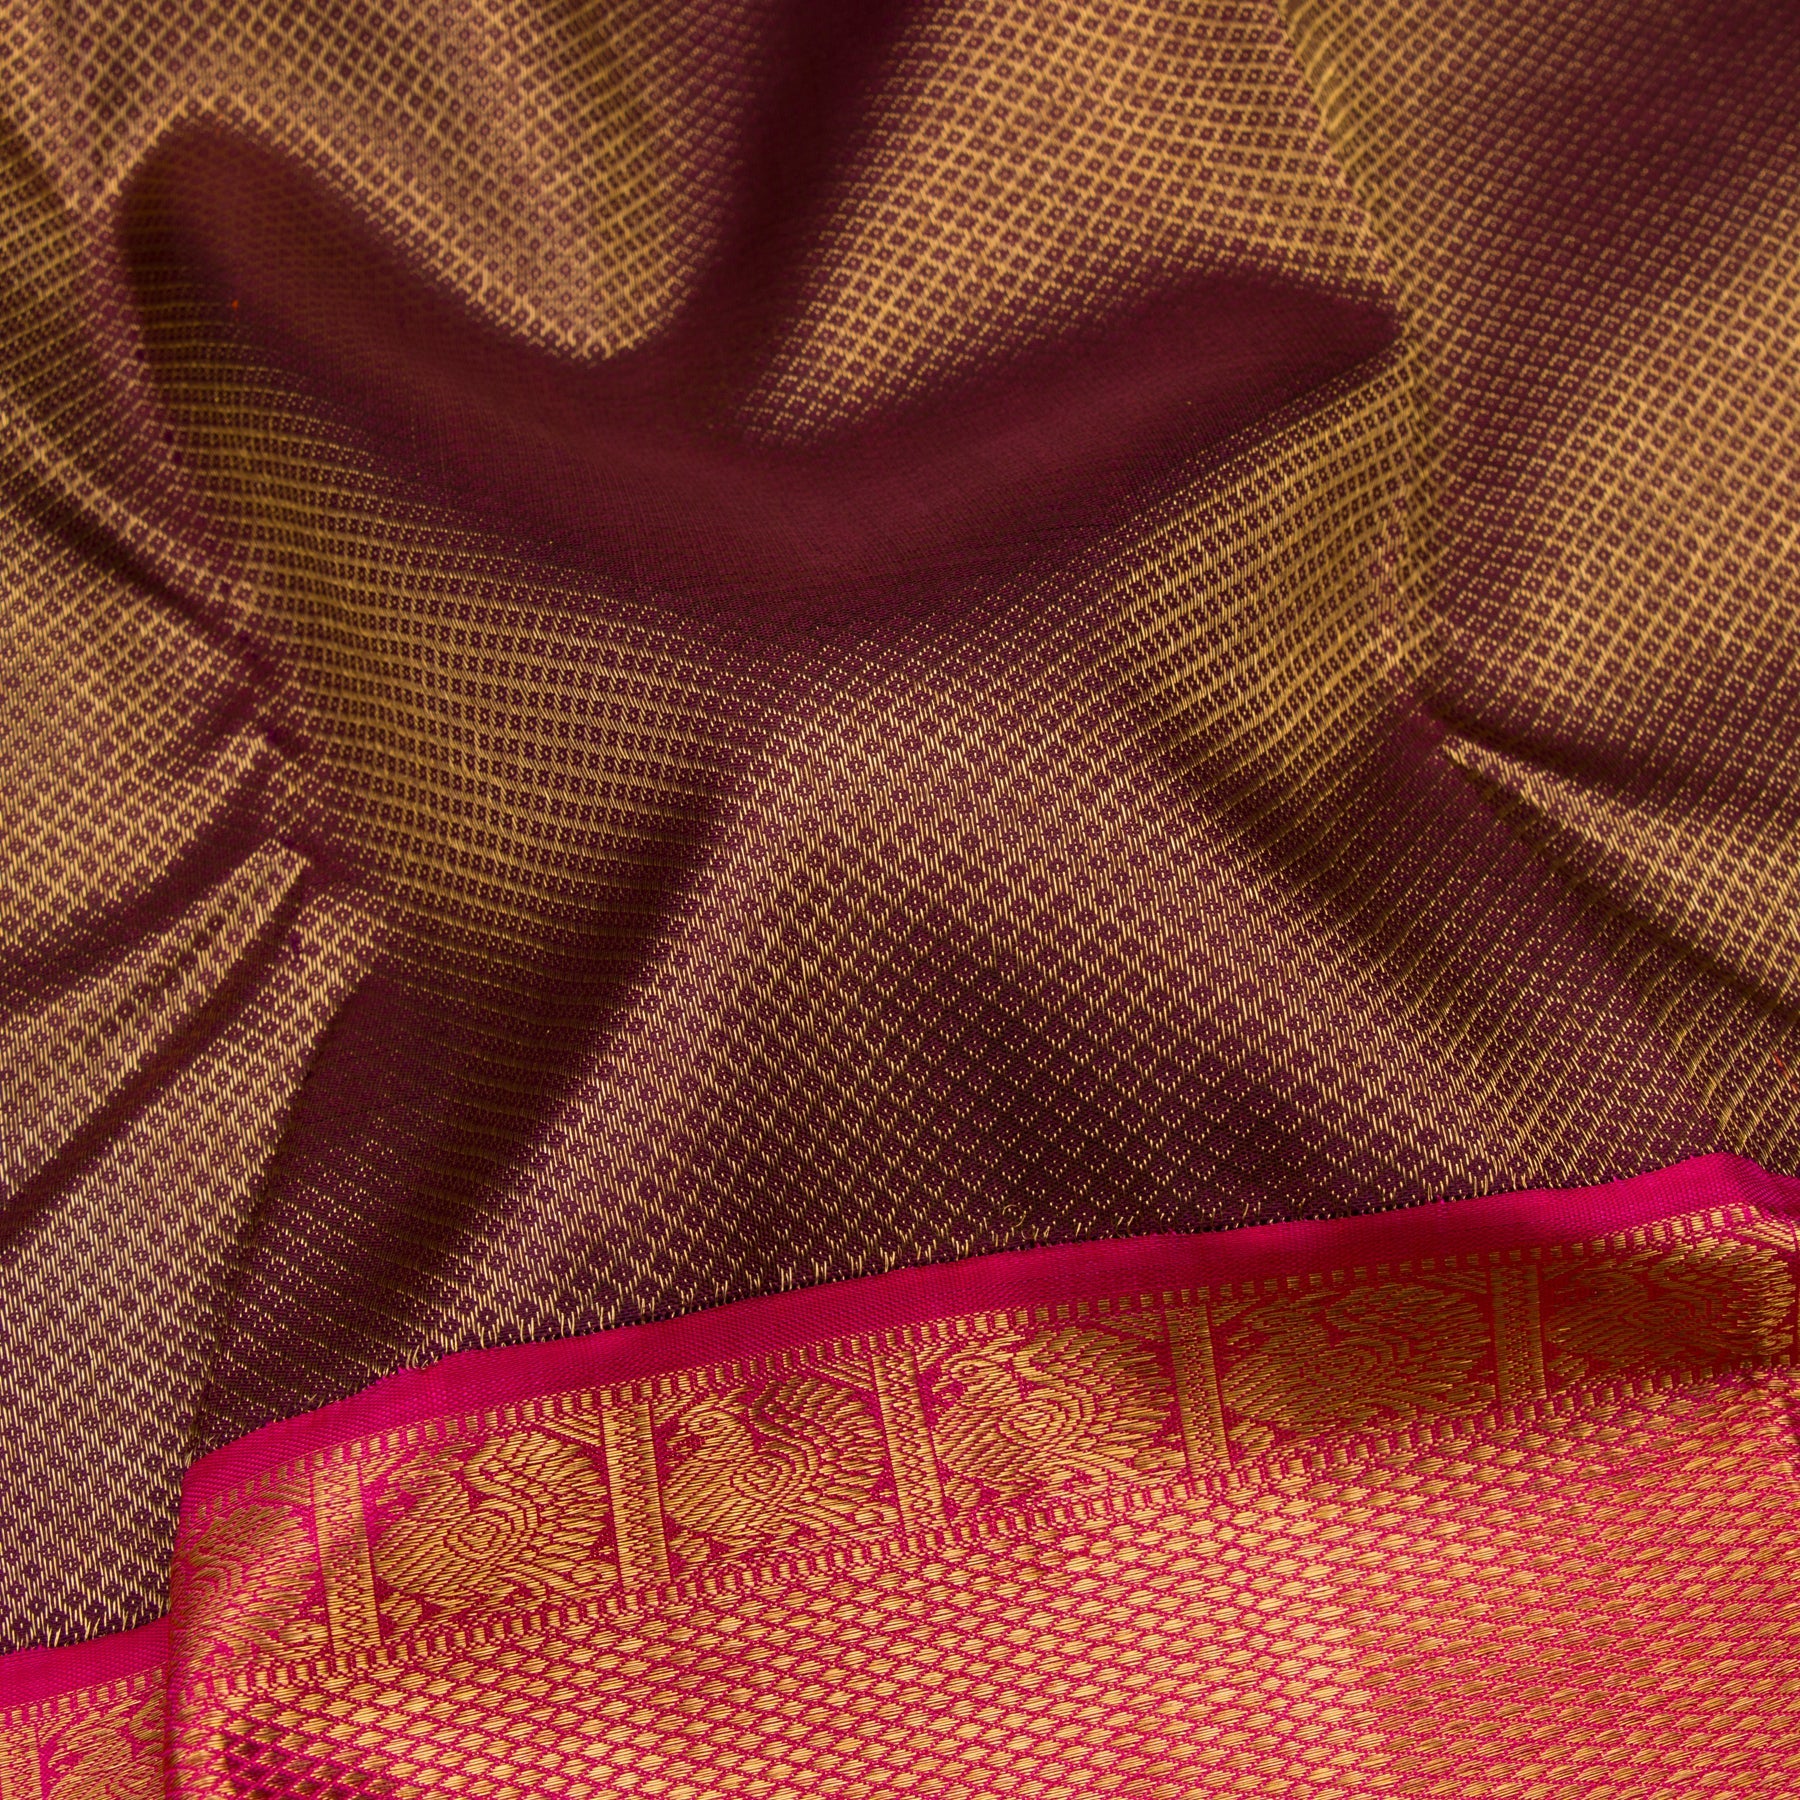 Kanakavalli Kanjivaram Silk Sari 23-110-HS001-09213 - Fabric View